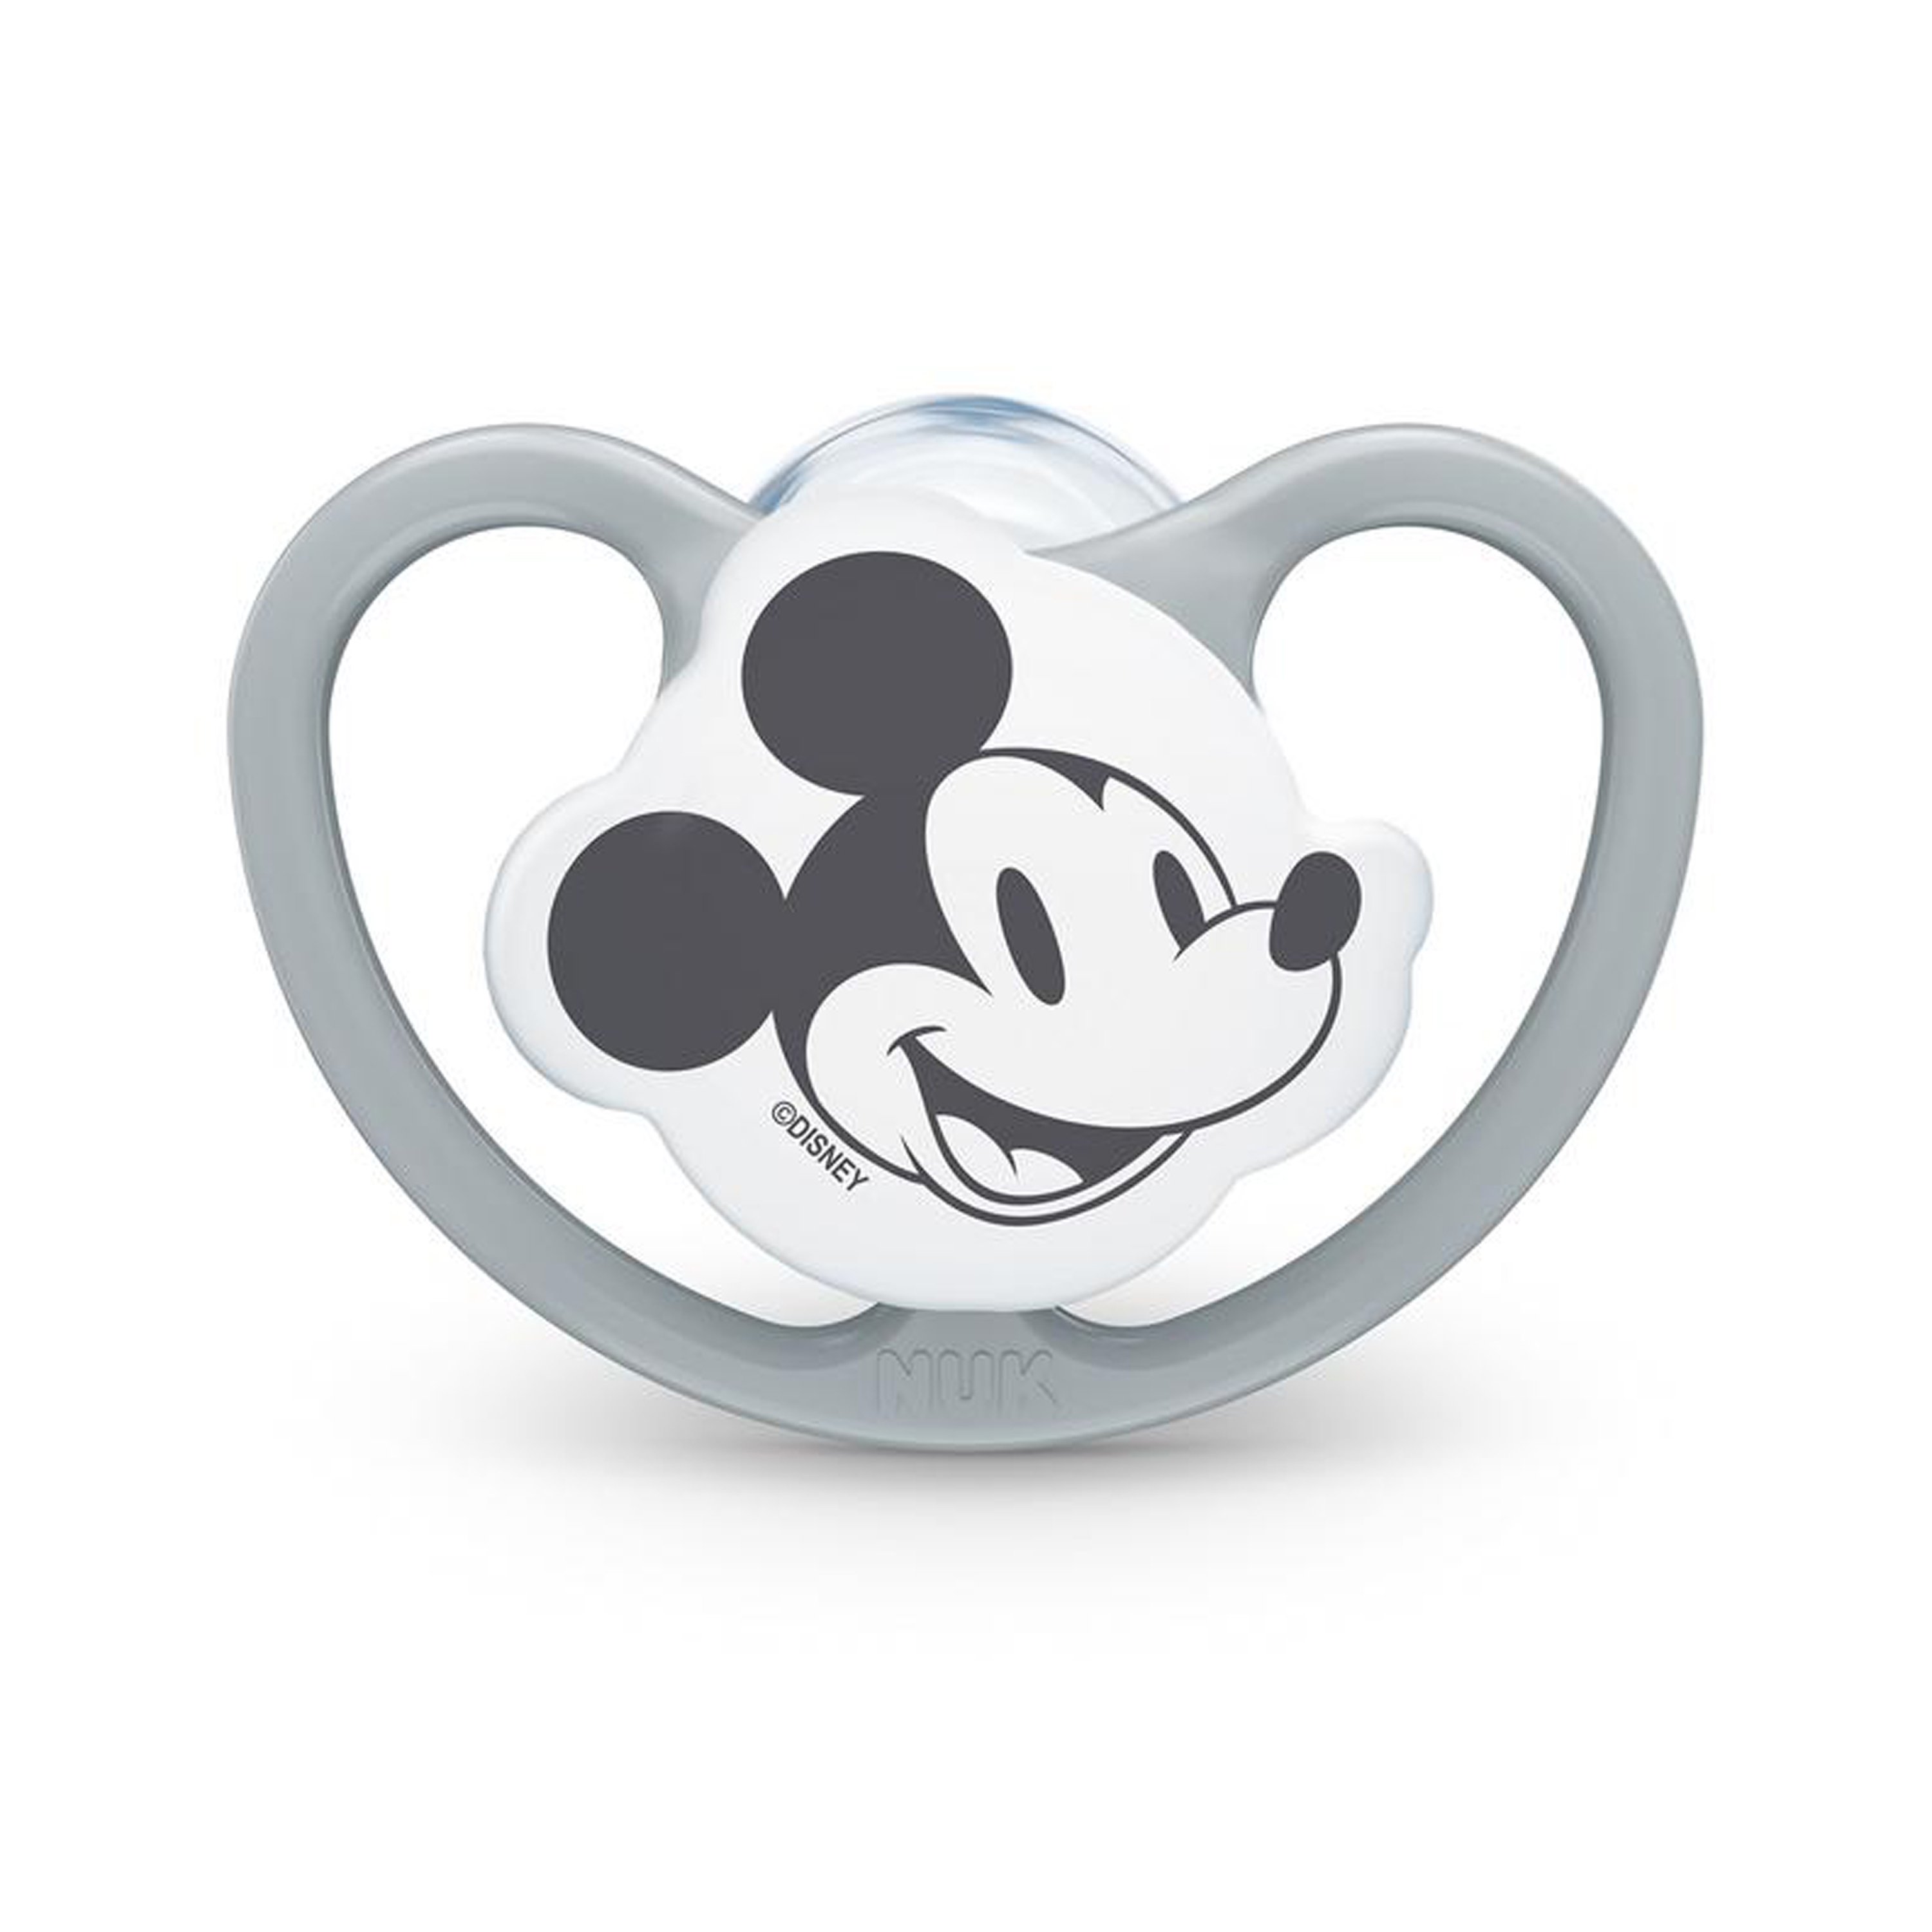 NUK Chupete Space Disney Mickey 0-6 meses 4 unidades en gris